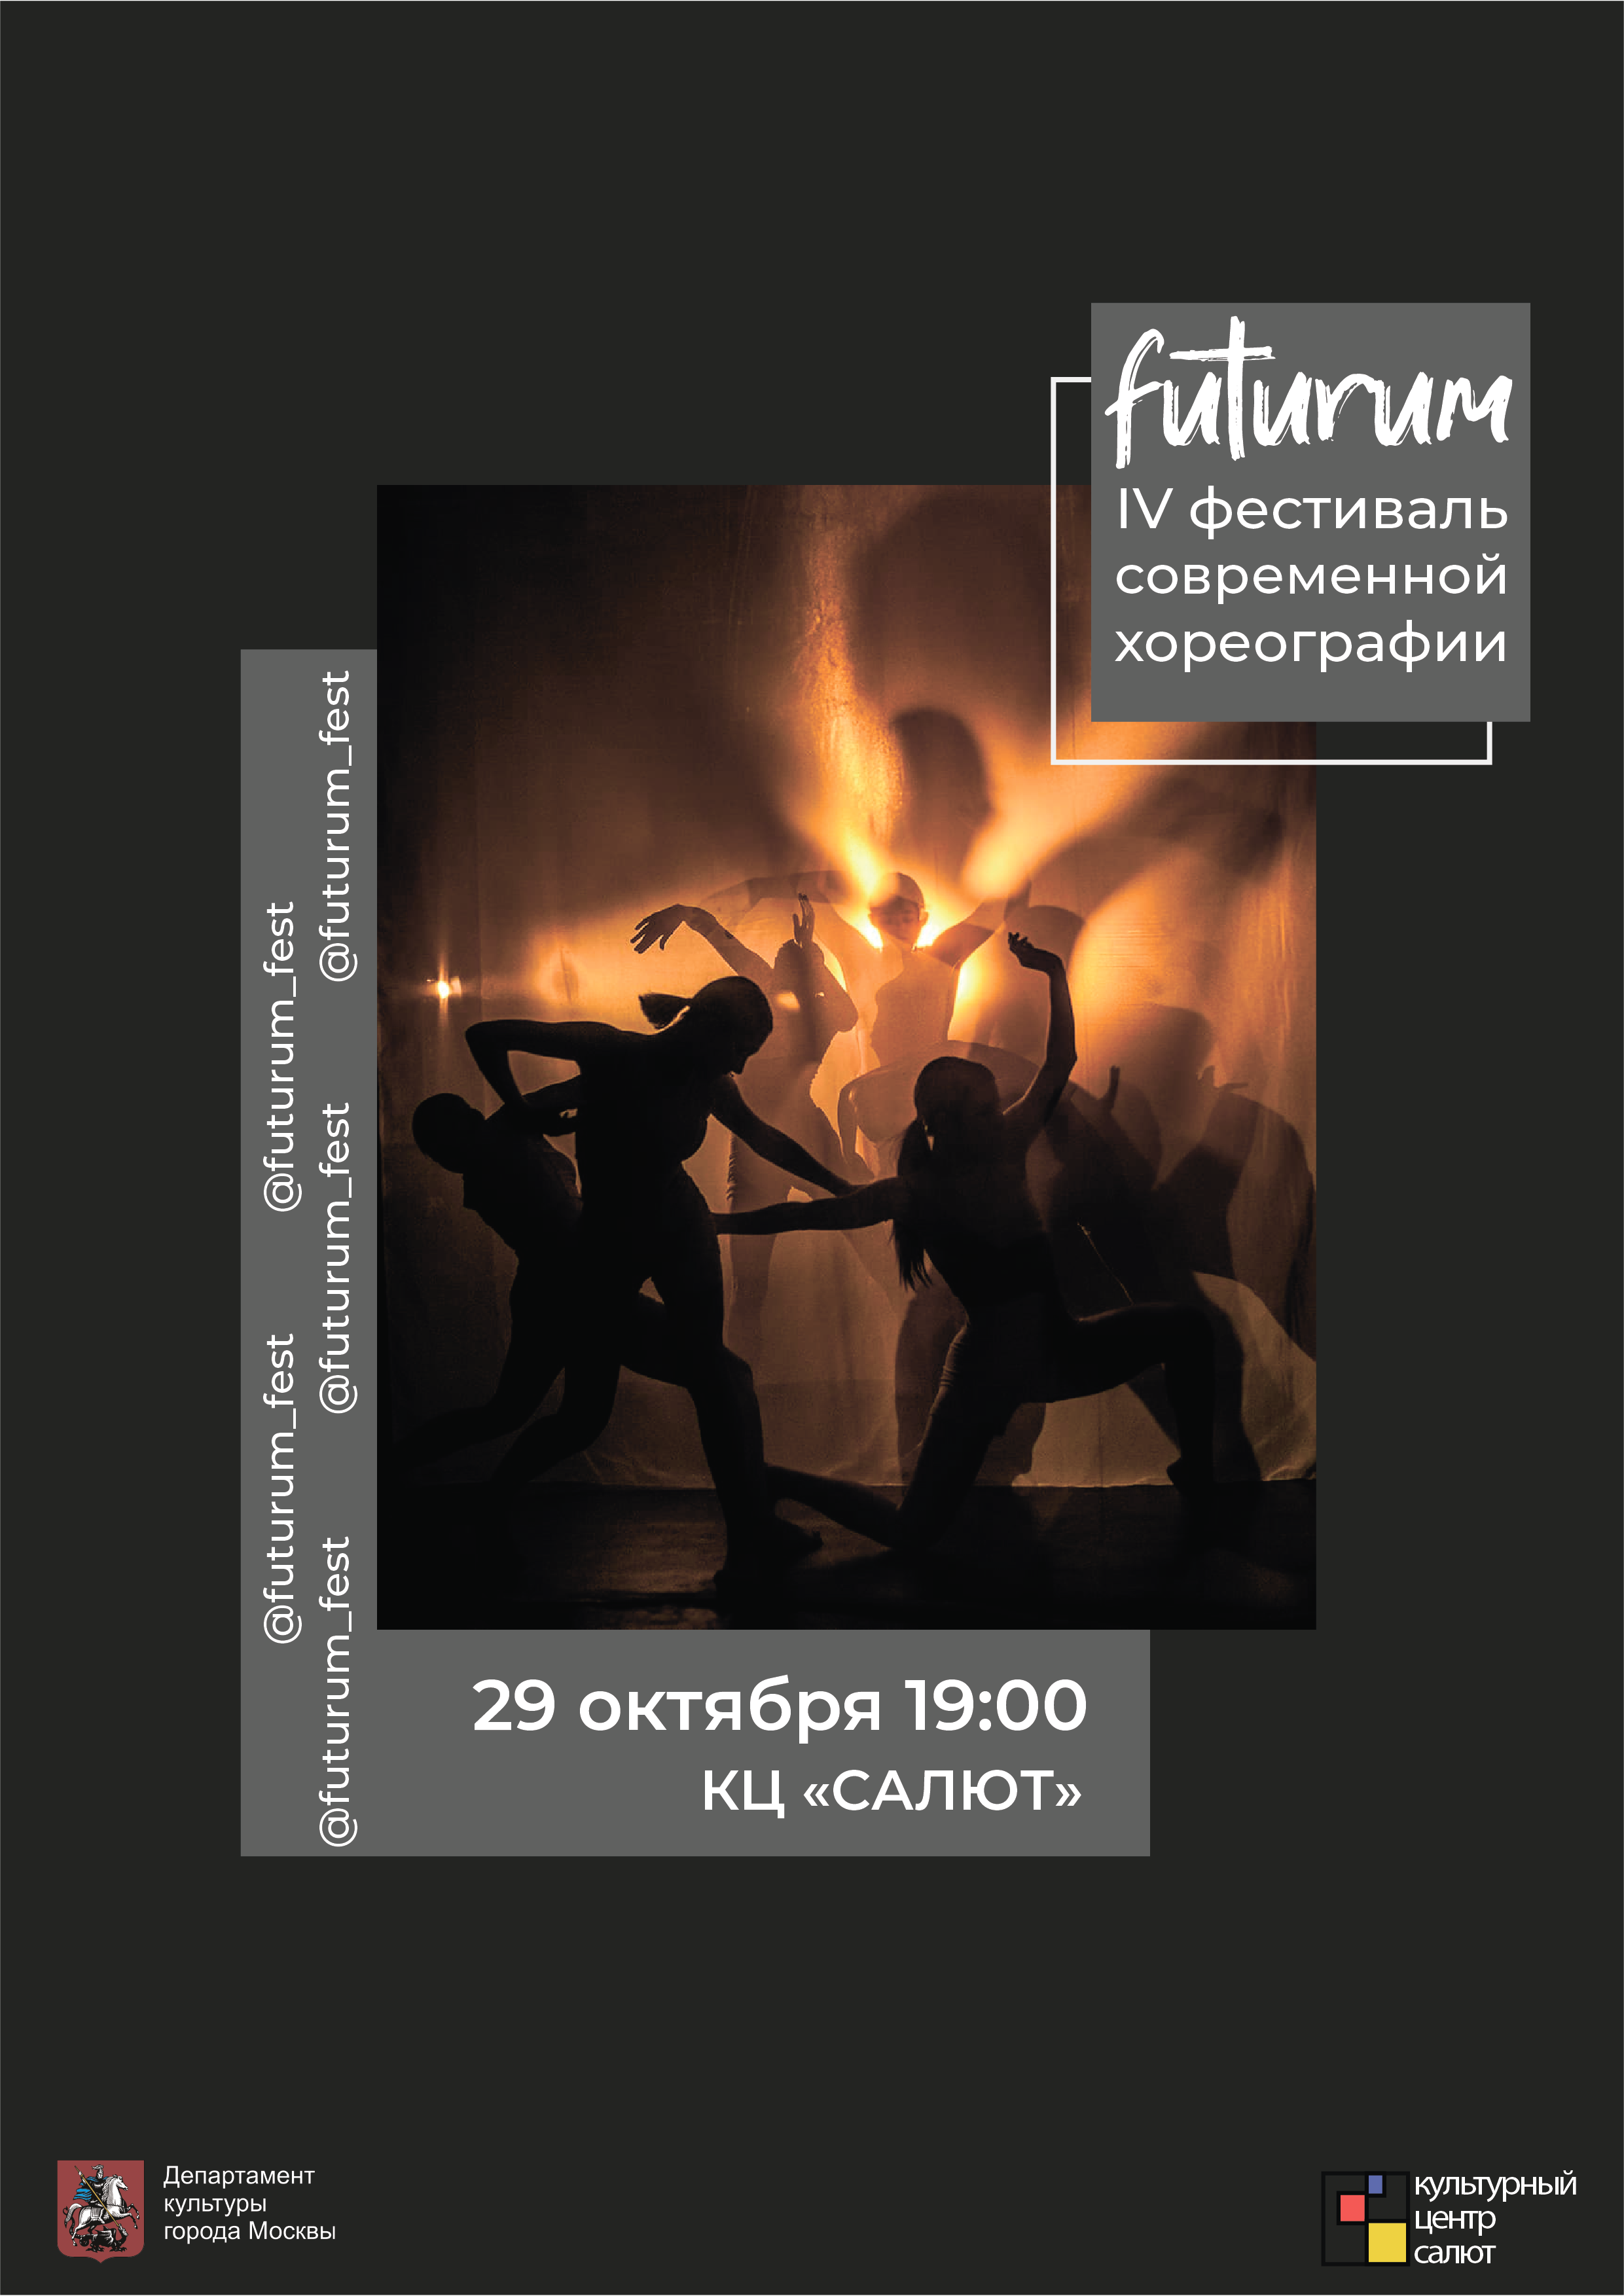 IV Фестиваль современной хореографии "Futurum"